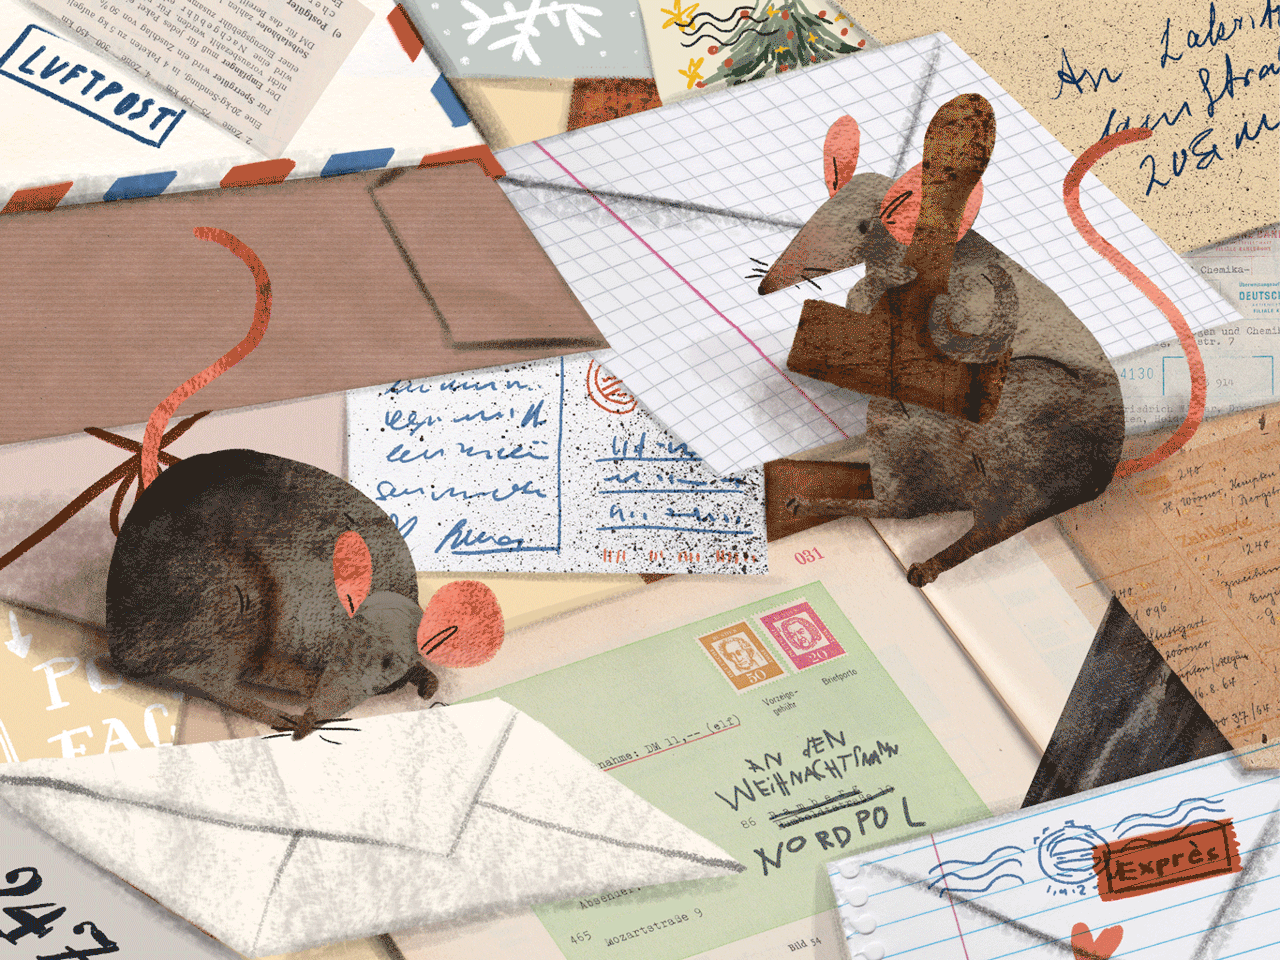 Анимация Крысы штампуют письма с поздравлением к Рождеству, by lakritzel, гифка Крысы штампуют письма с поздравлением к Рождеству, by lakritzel